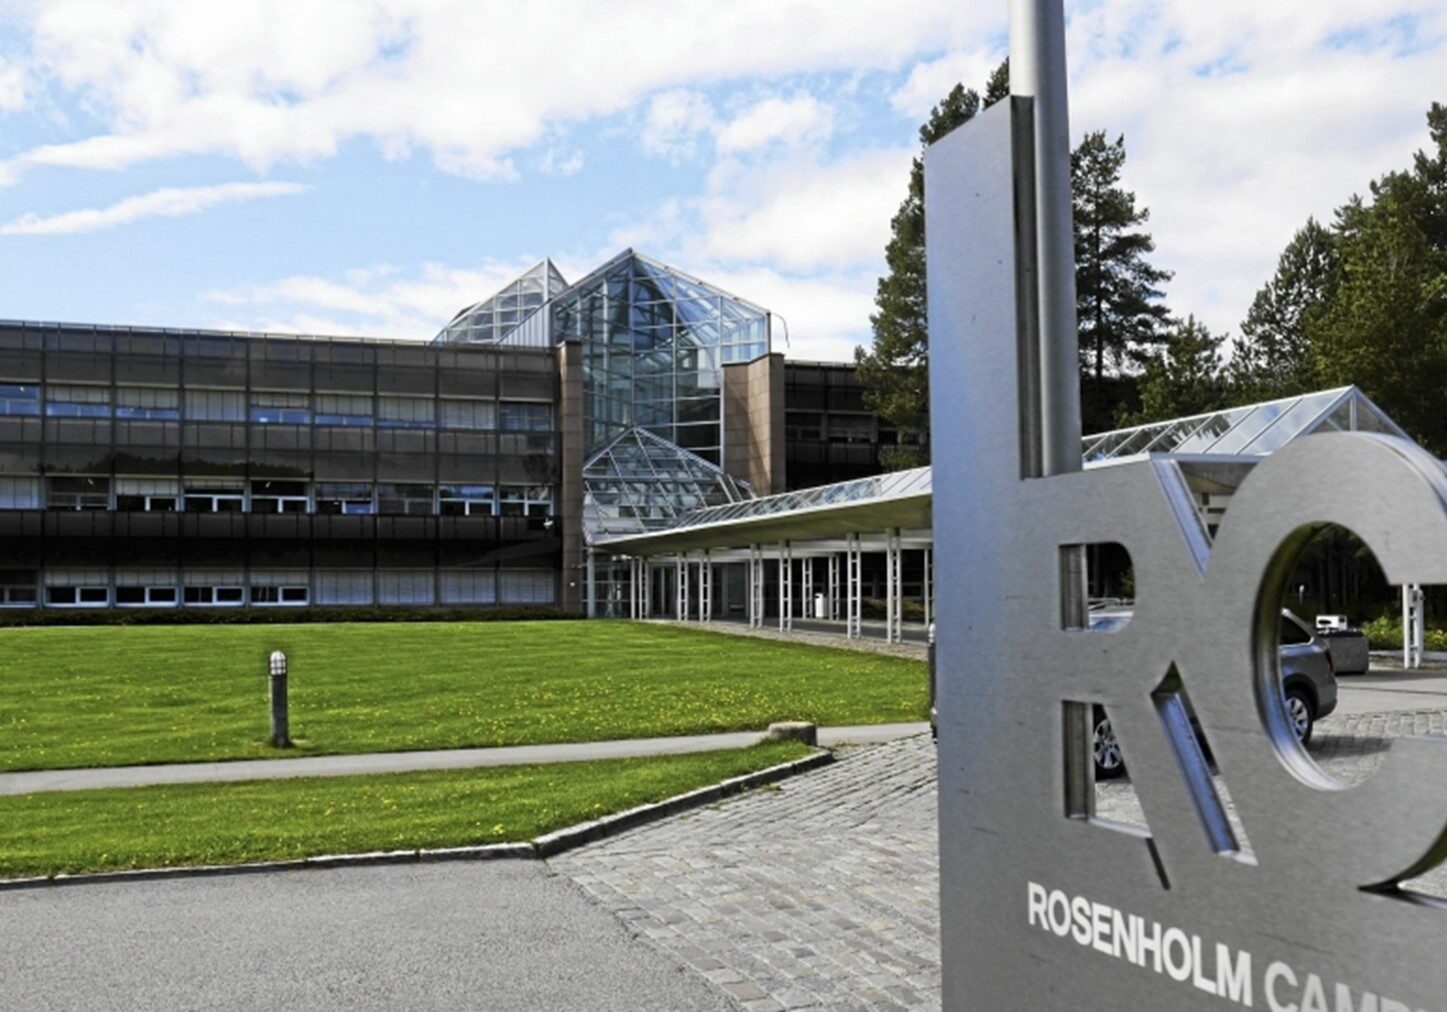 Rosenholm Campus_Oslo